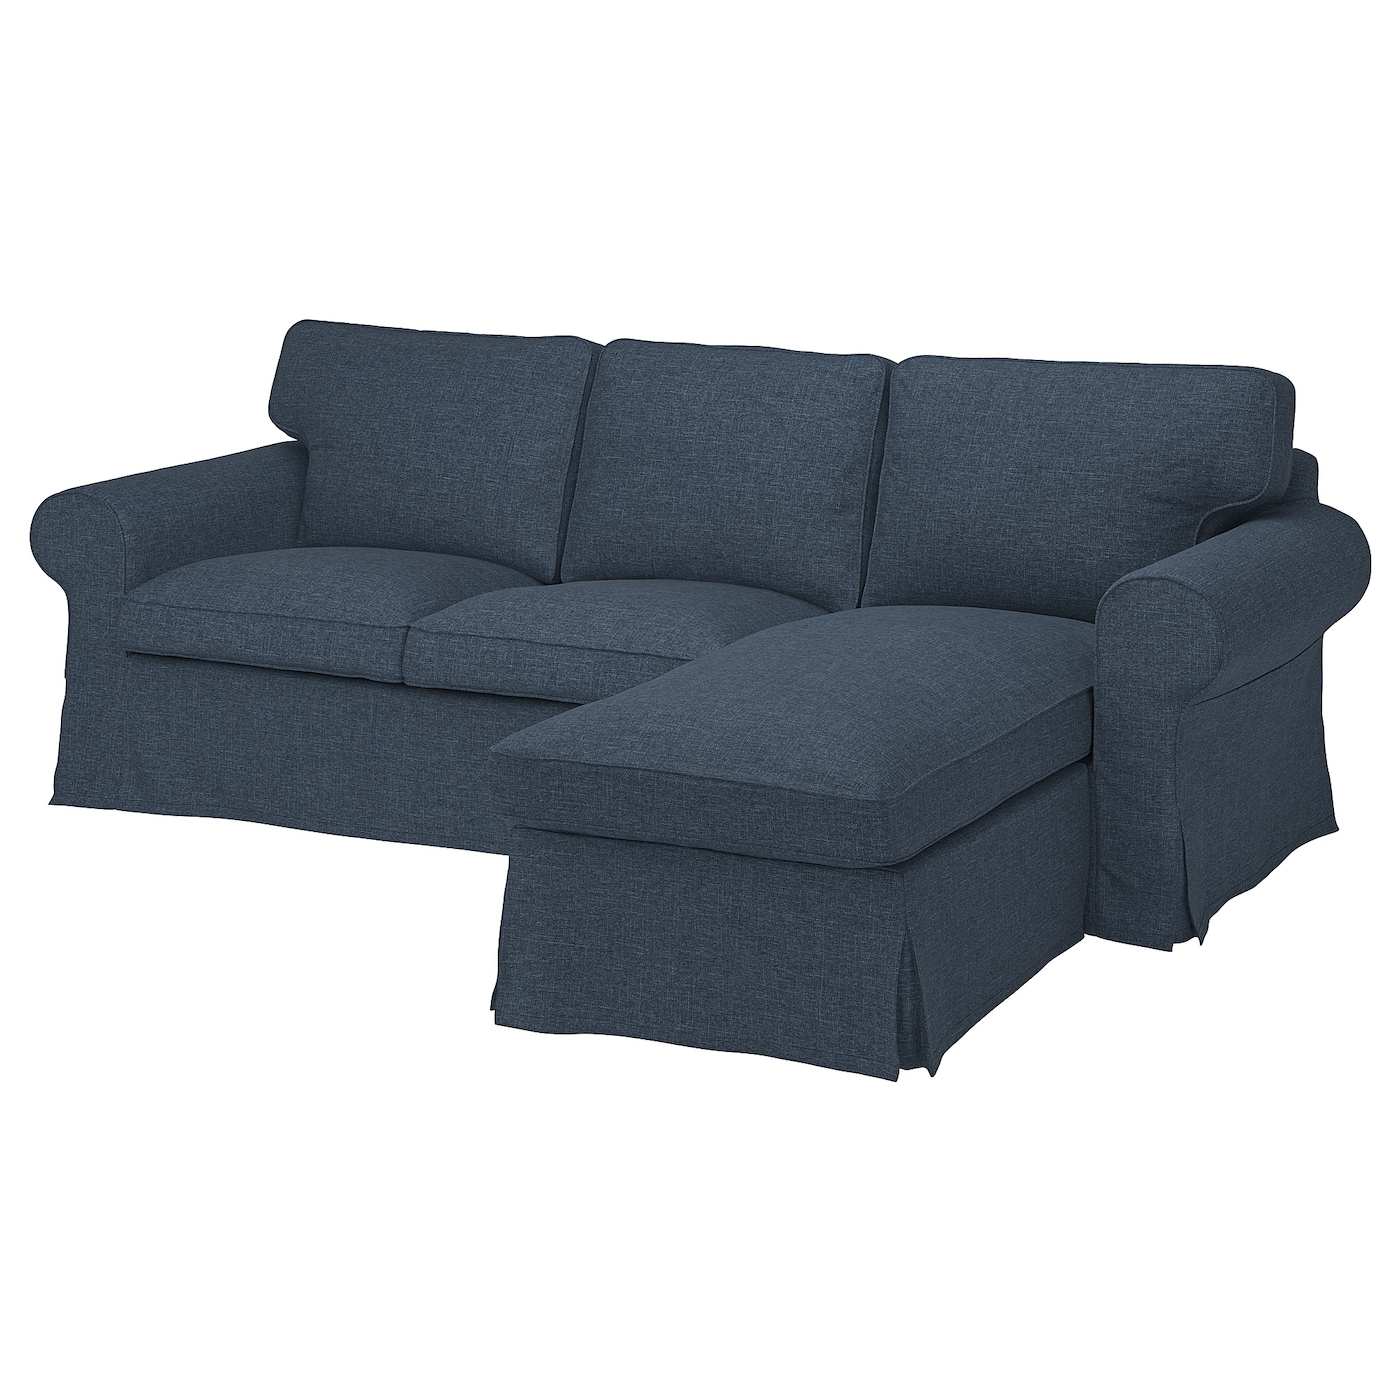 3-местный диван с шезлонгом - IKEA EKTORP, 88x88x252см, синий, ЭКТОРП ИКЕА